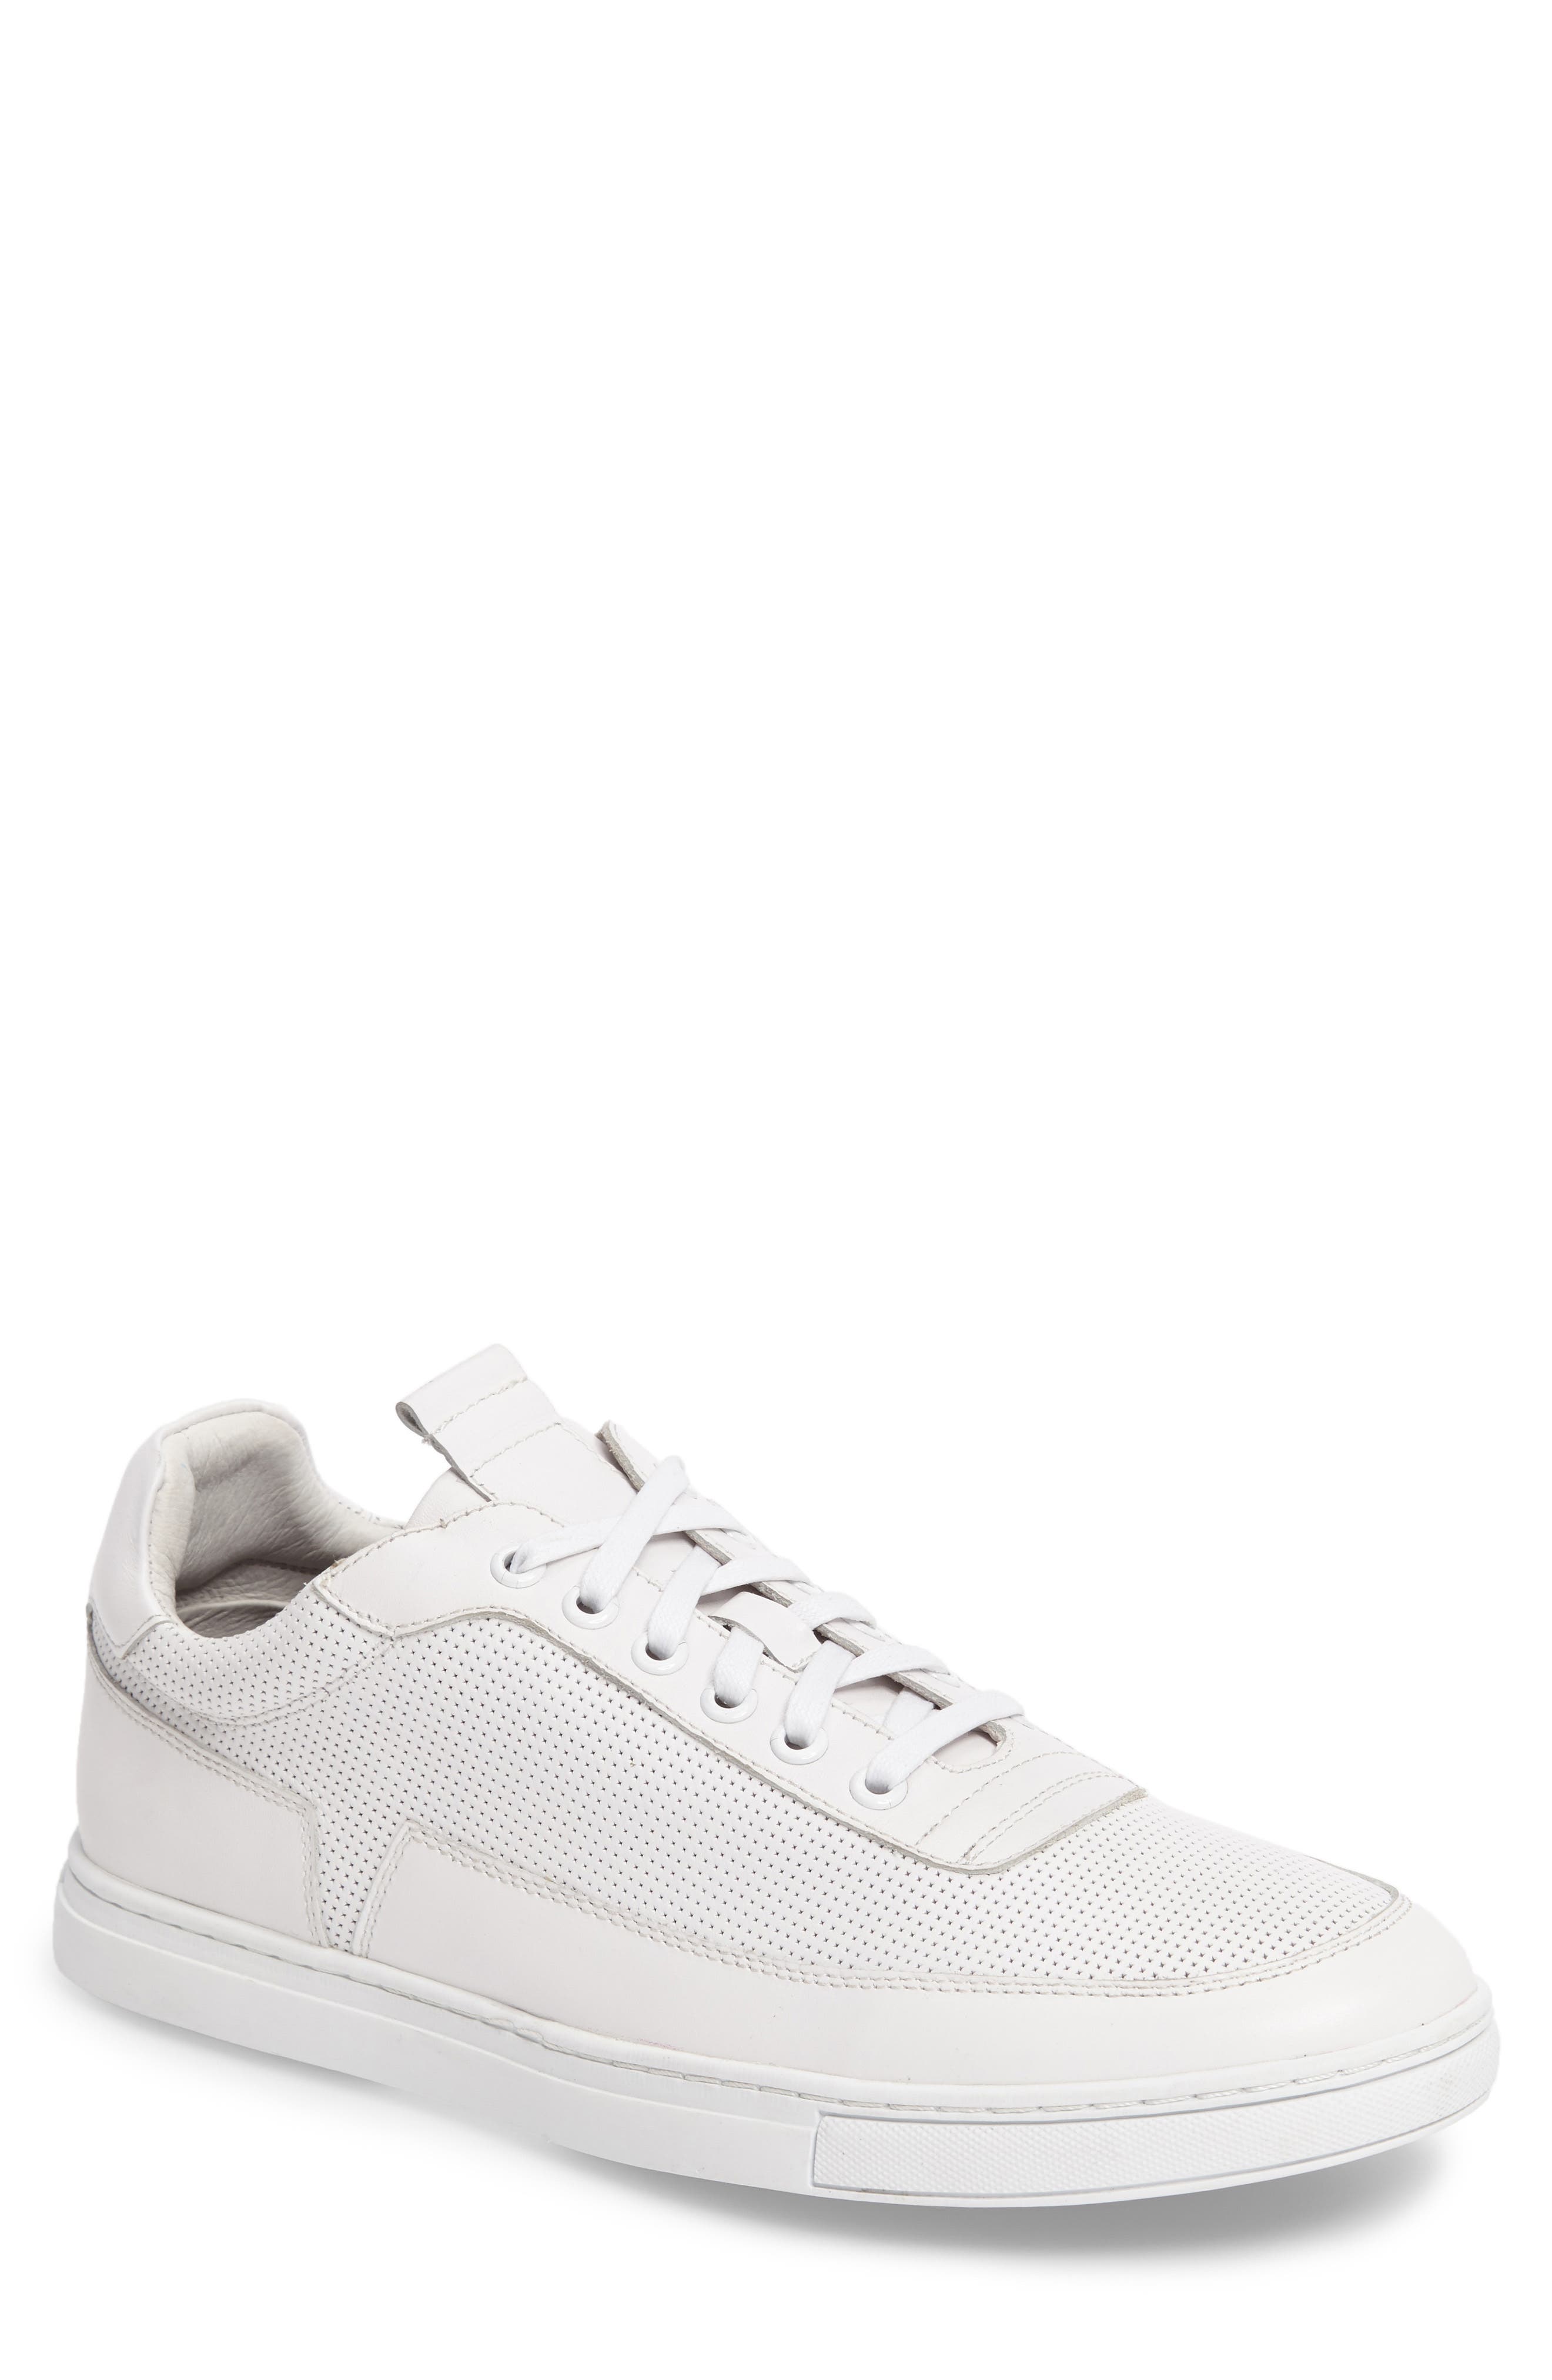 Zanzara Harmony Sneaker In Open White1